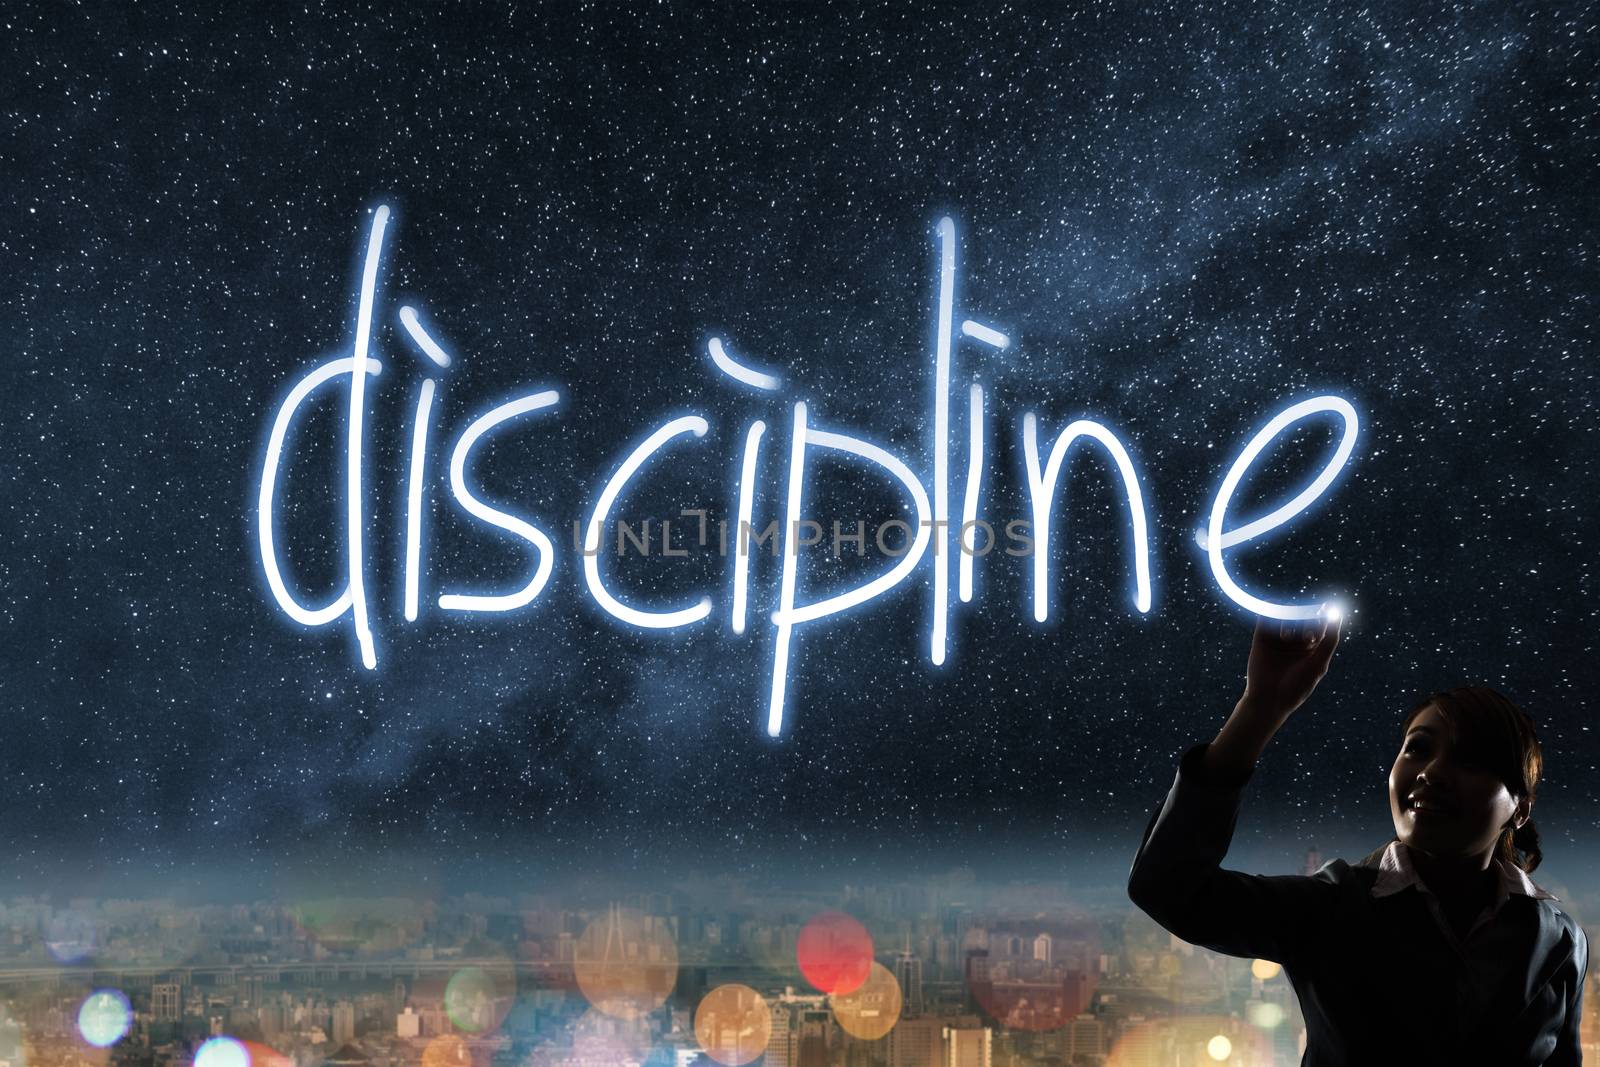 Concept of discipline by elwynn